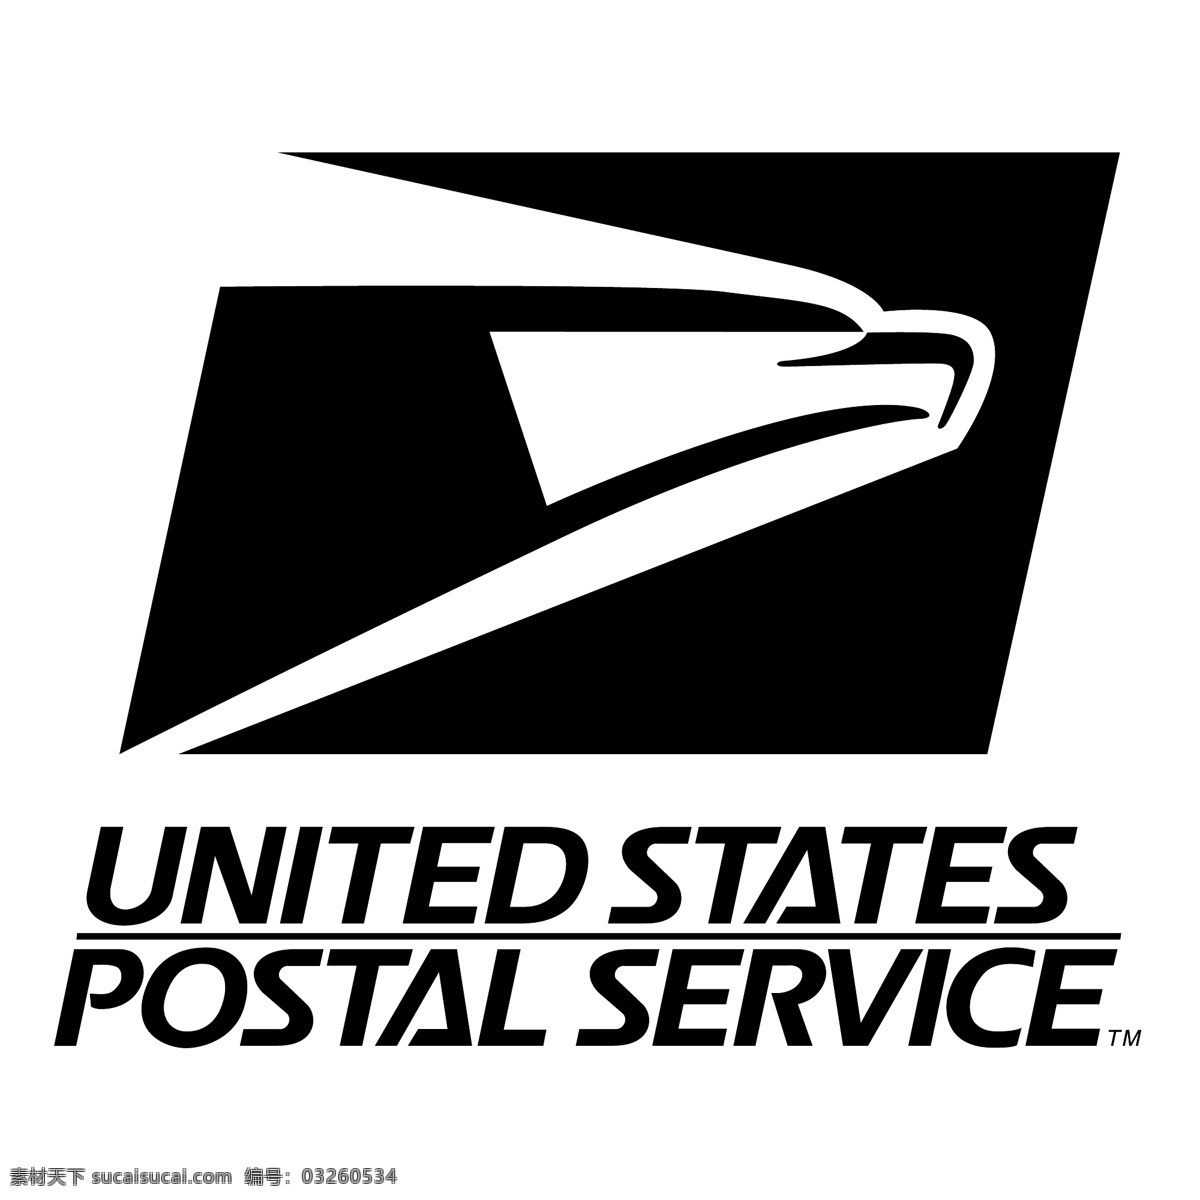 美国 邮政服务 免费 标志 psd源文件 logo设计